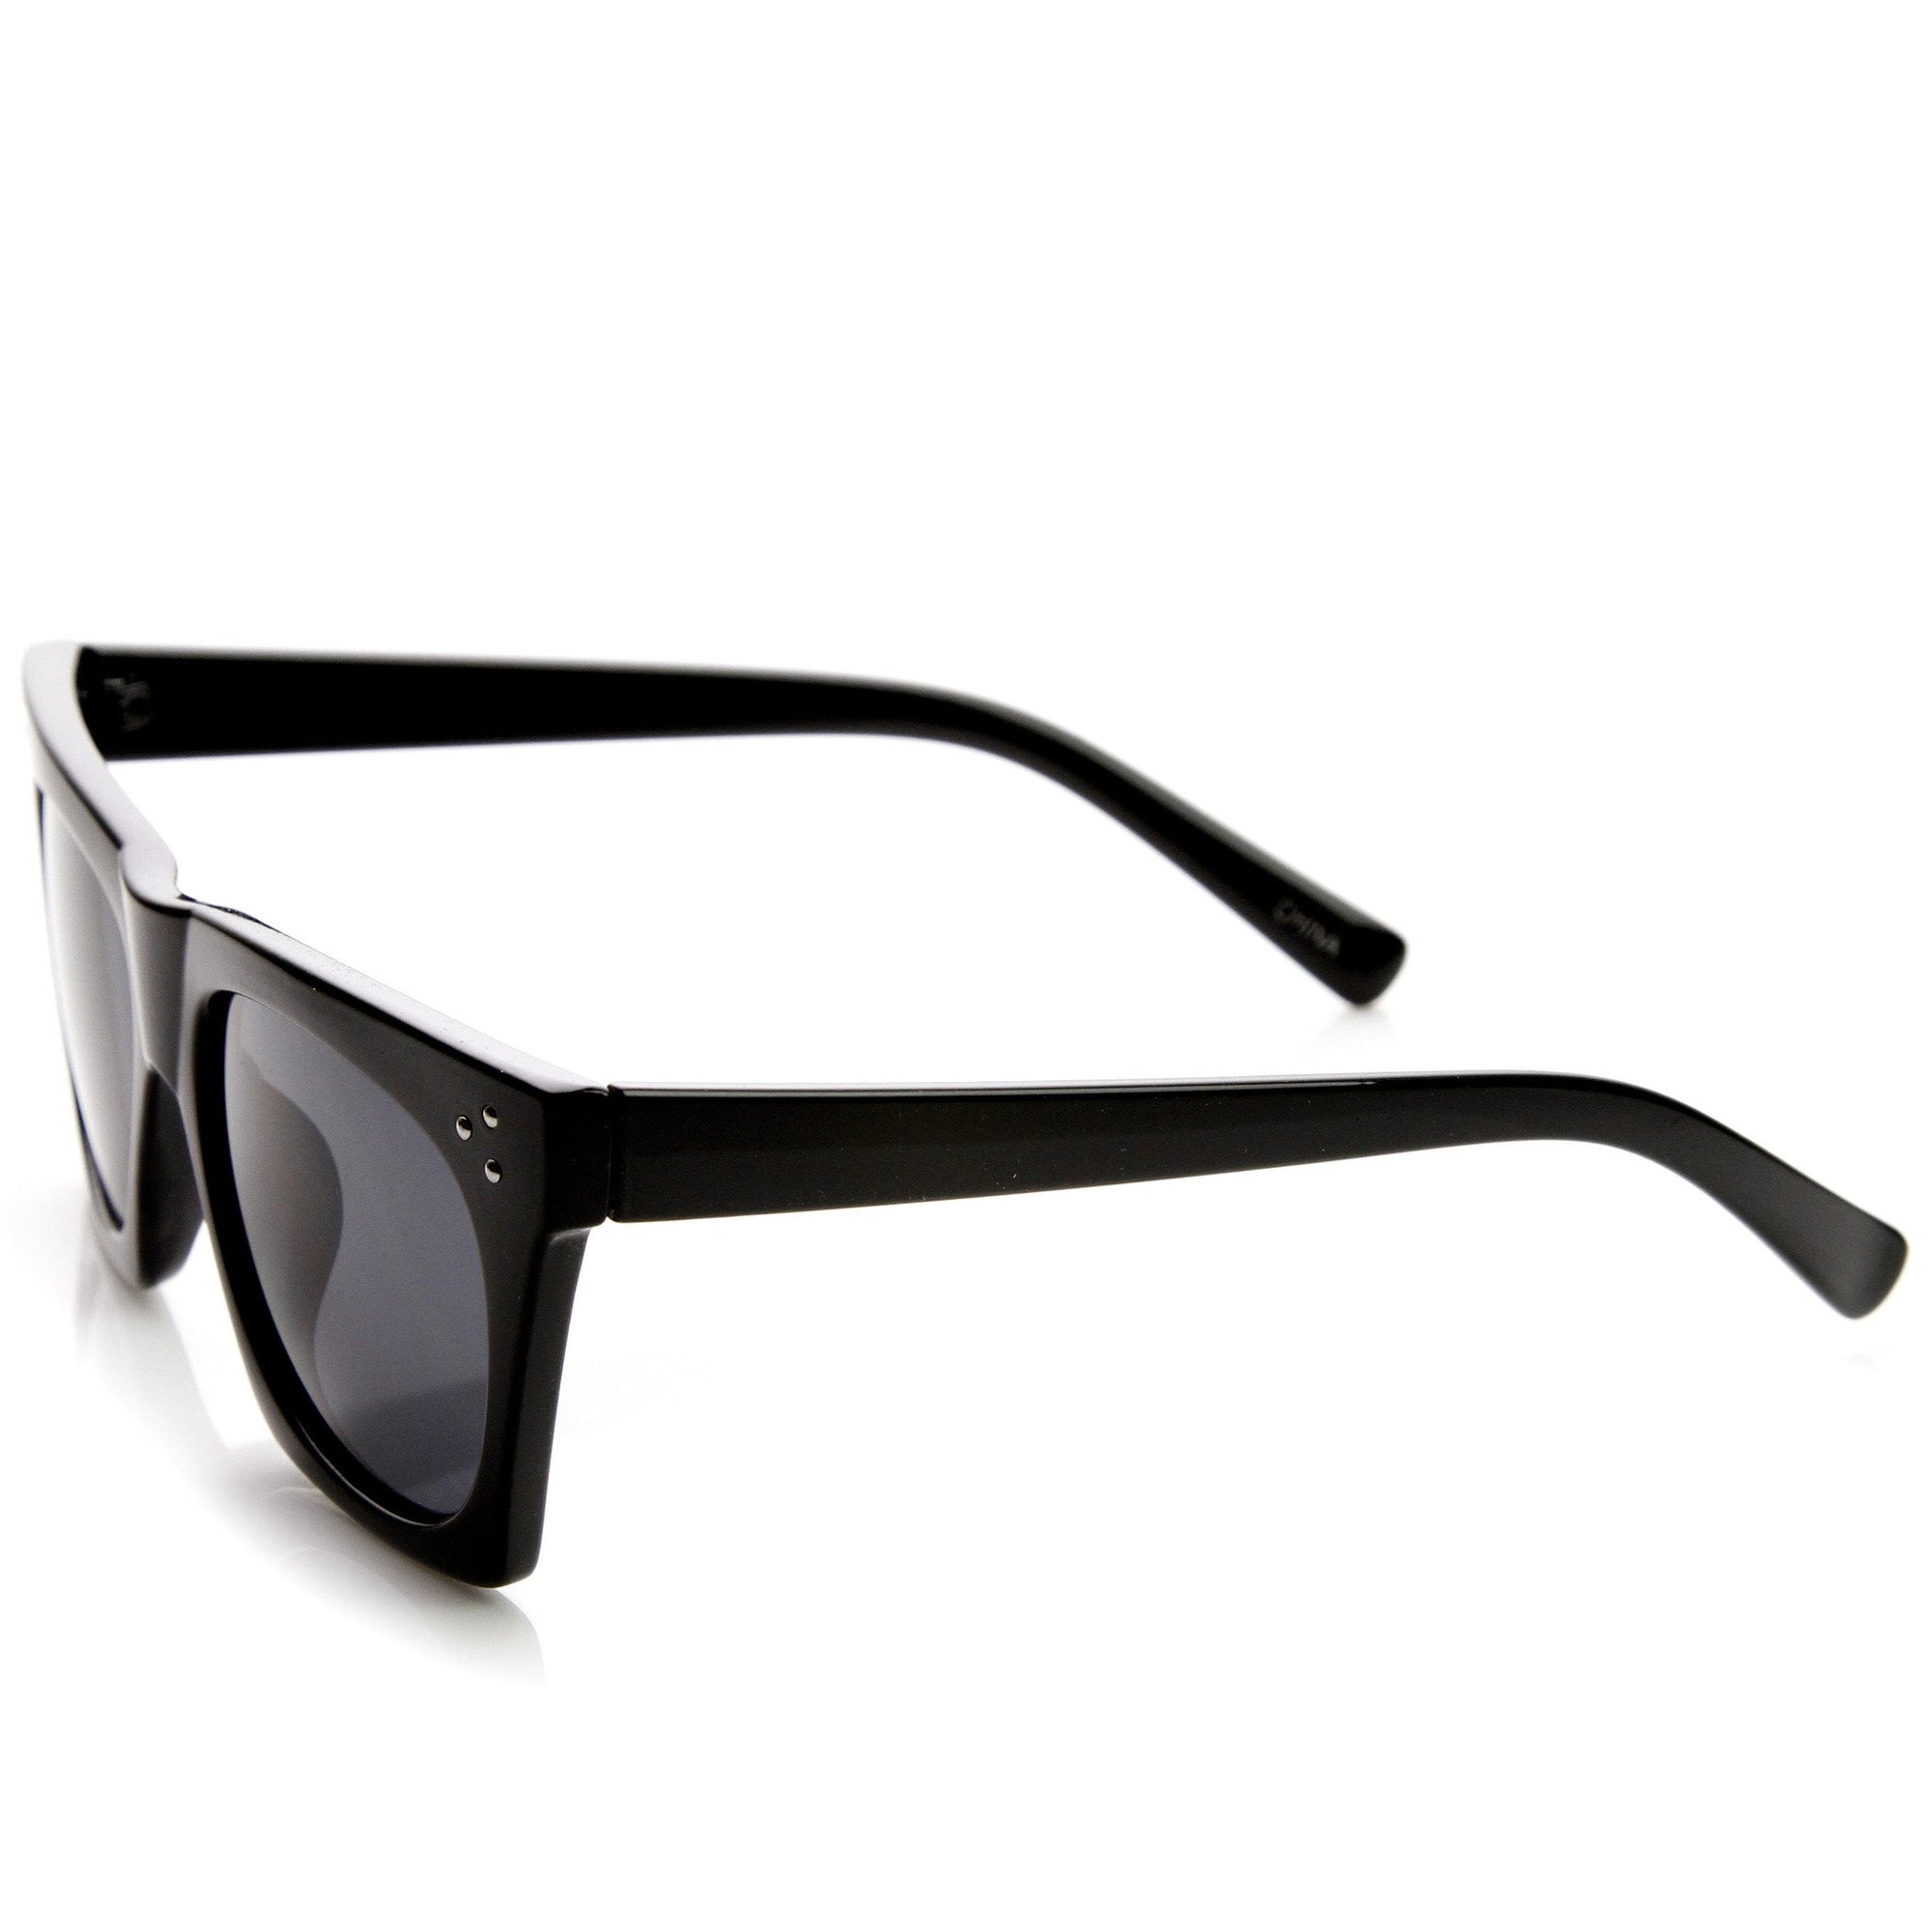 Women's Retro Modern Horned Rim Cat Eye Sunglasses - zeroUV